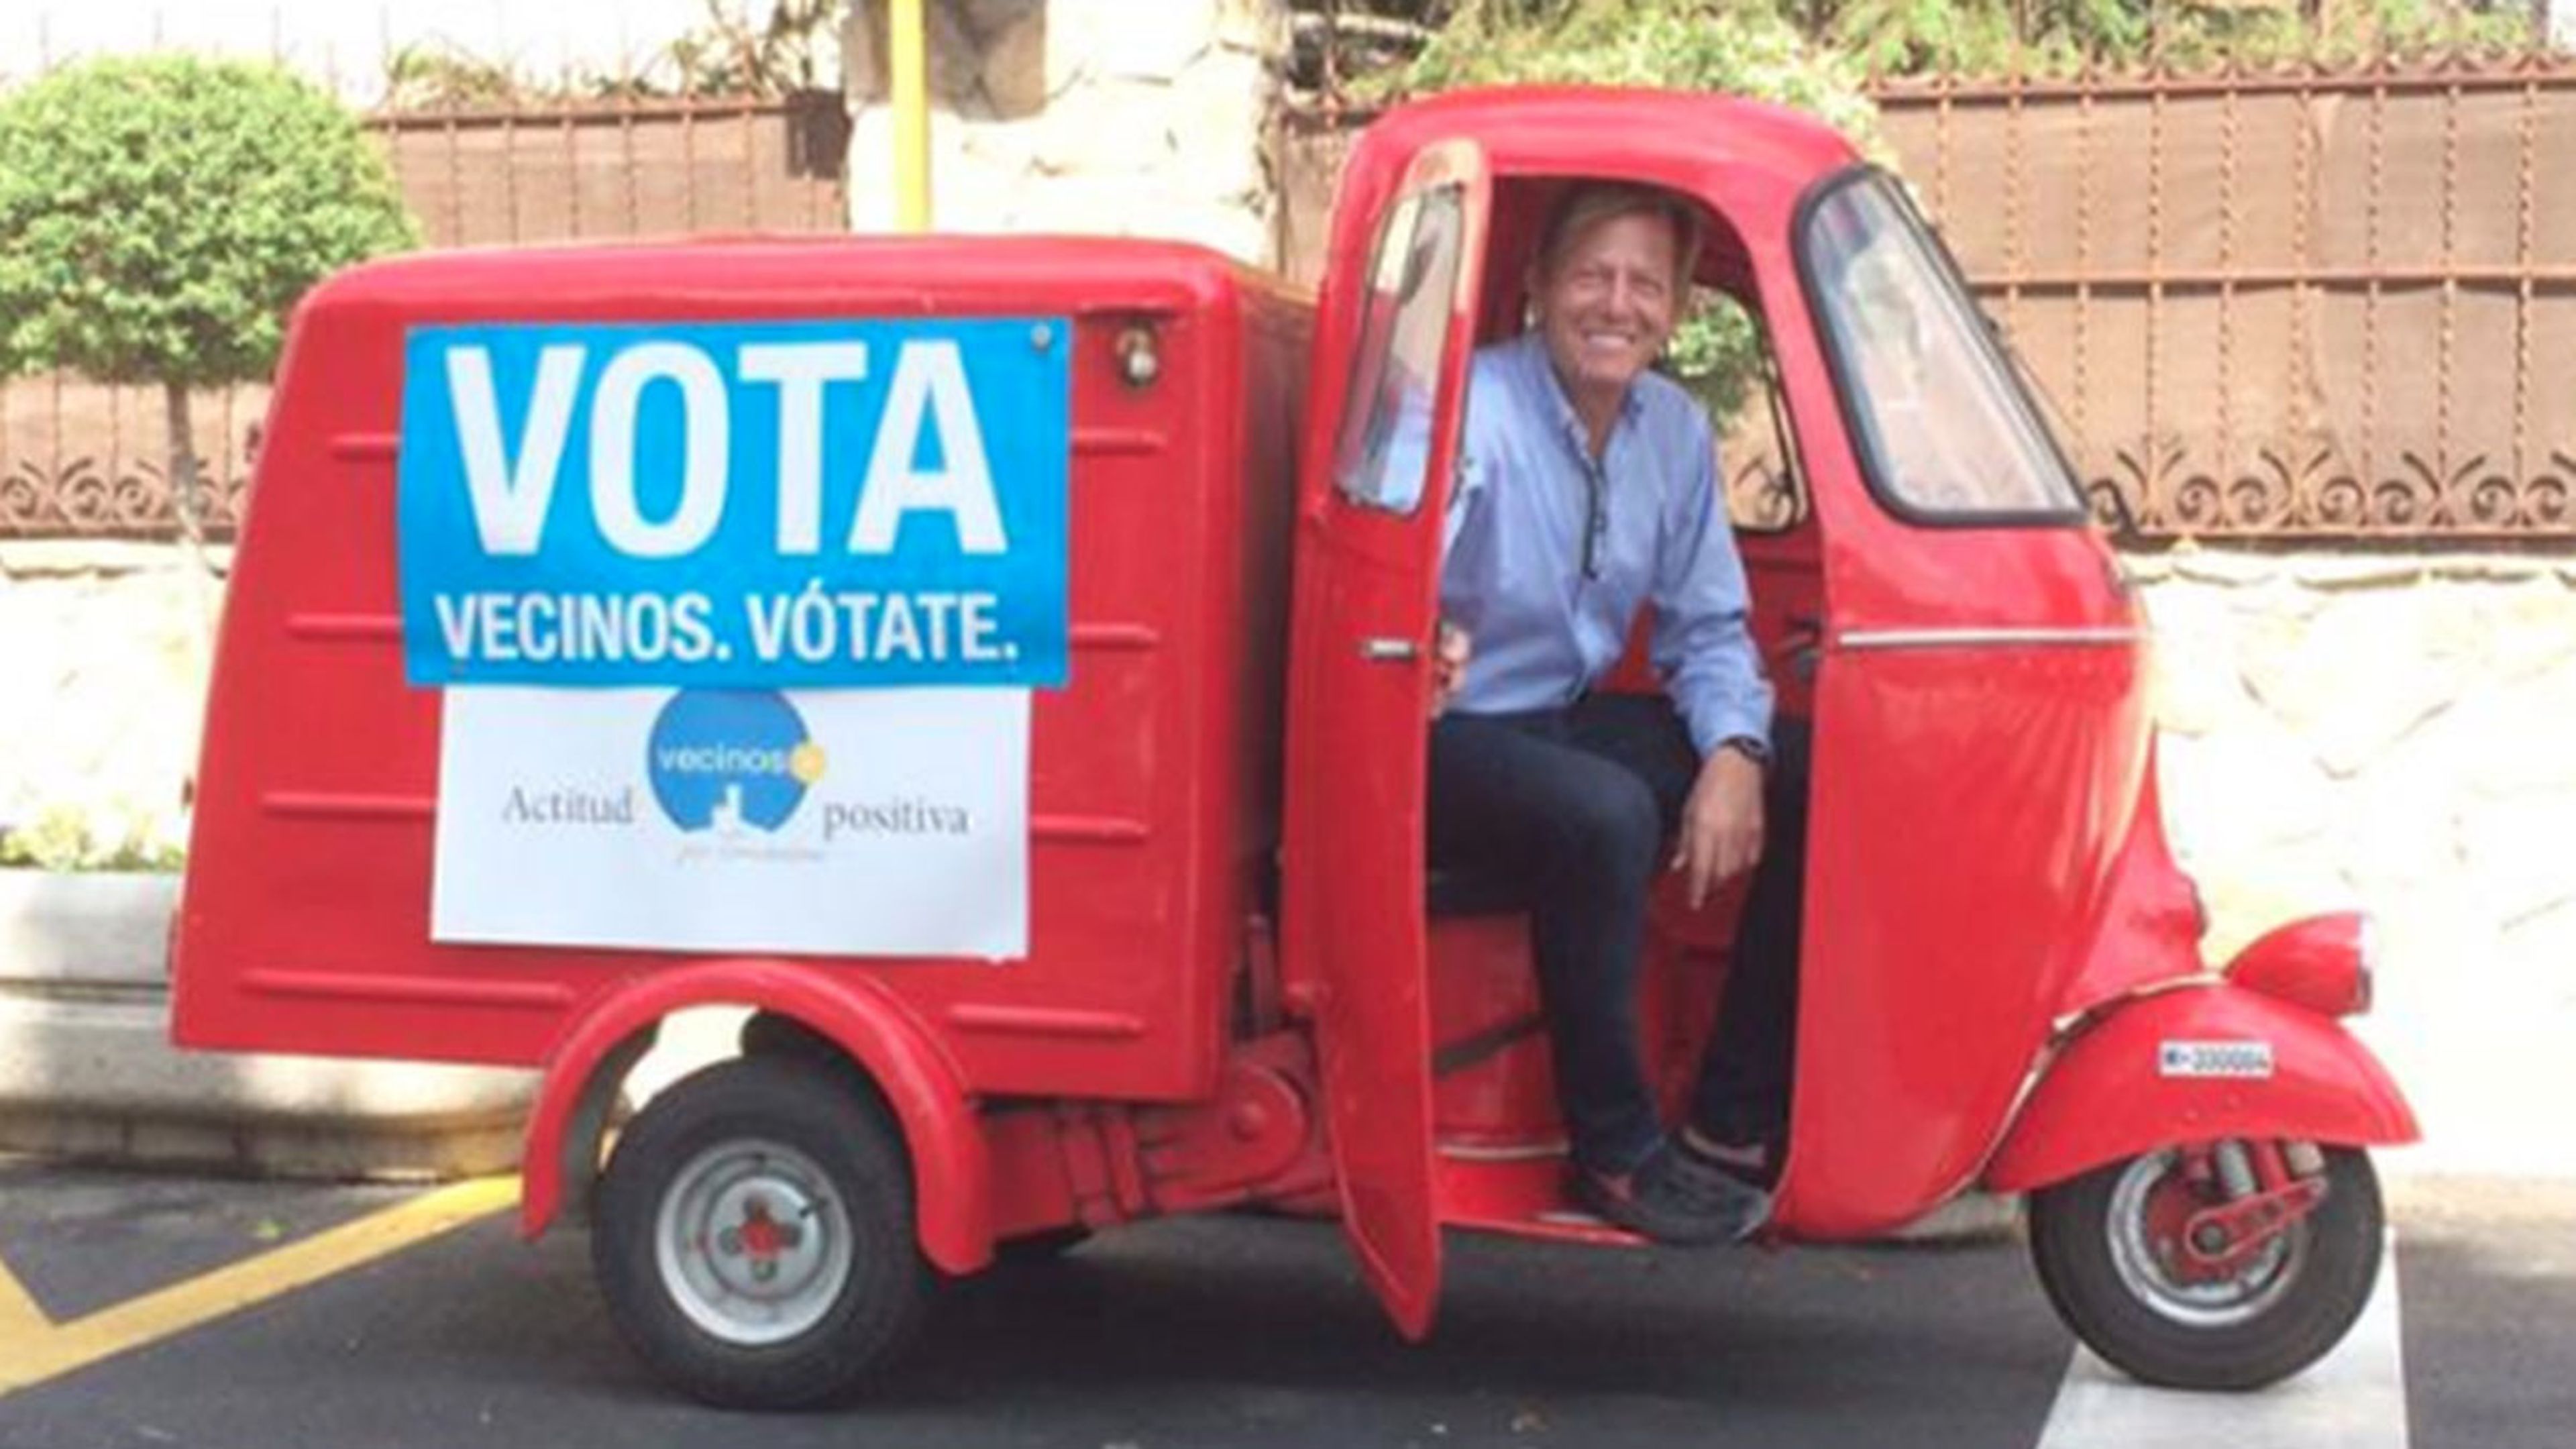 Las motos en las Elecciones Autonómicas y Municipales 2015